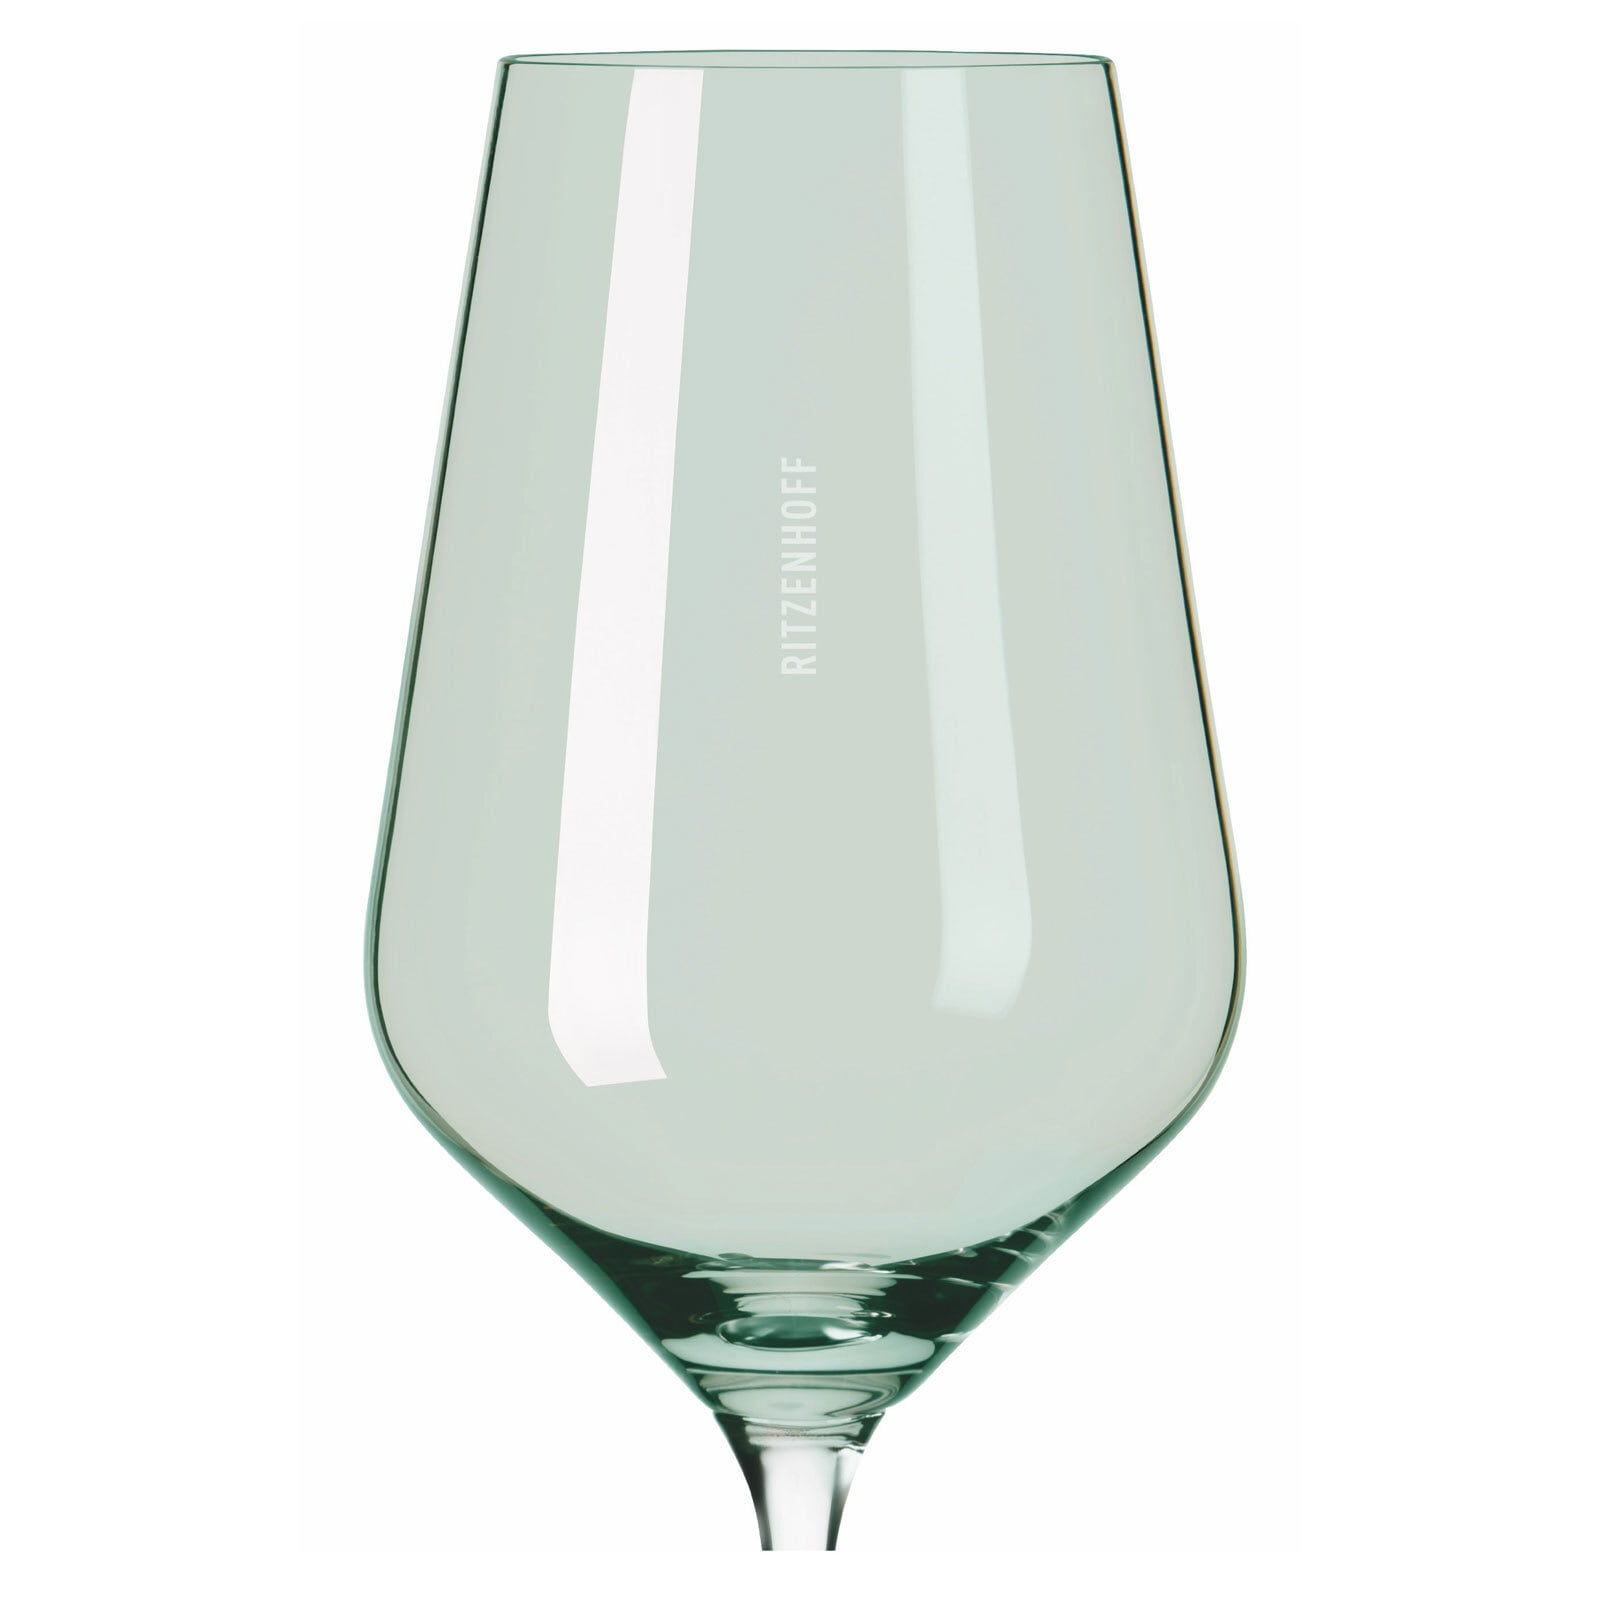 RITZENHOFF Weißweinglas FJORDLICHT 2er Set grün